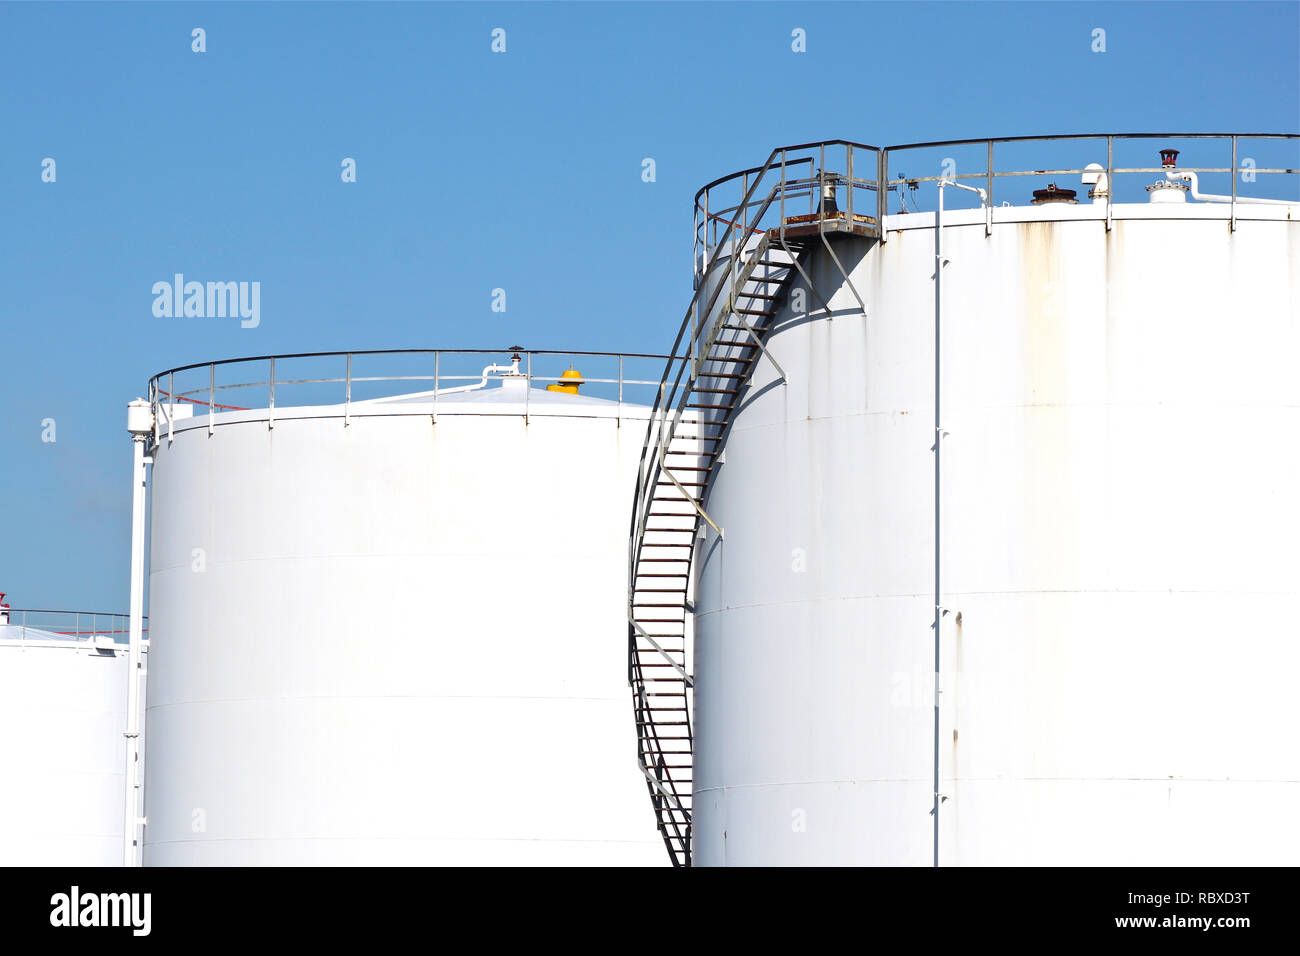 Blanco grandes tanques de almacenamiento de petróleo y combustible en una refinería. Foto de stock